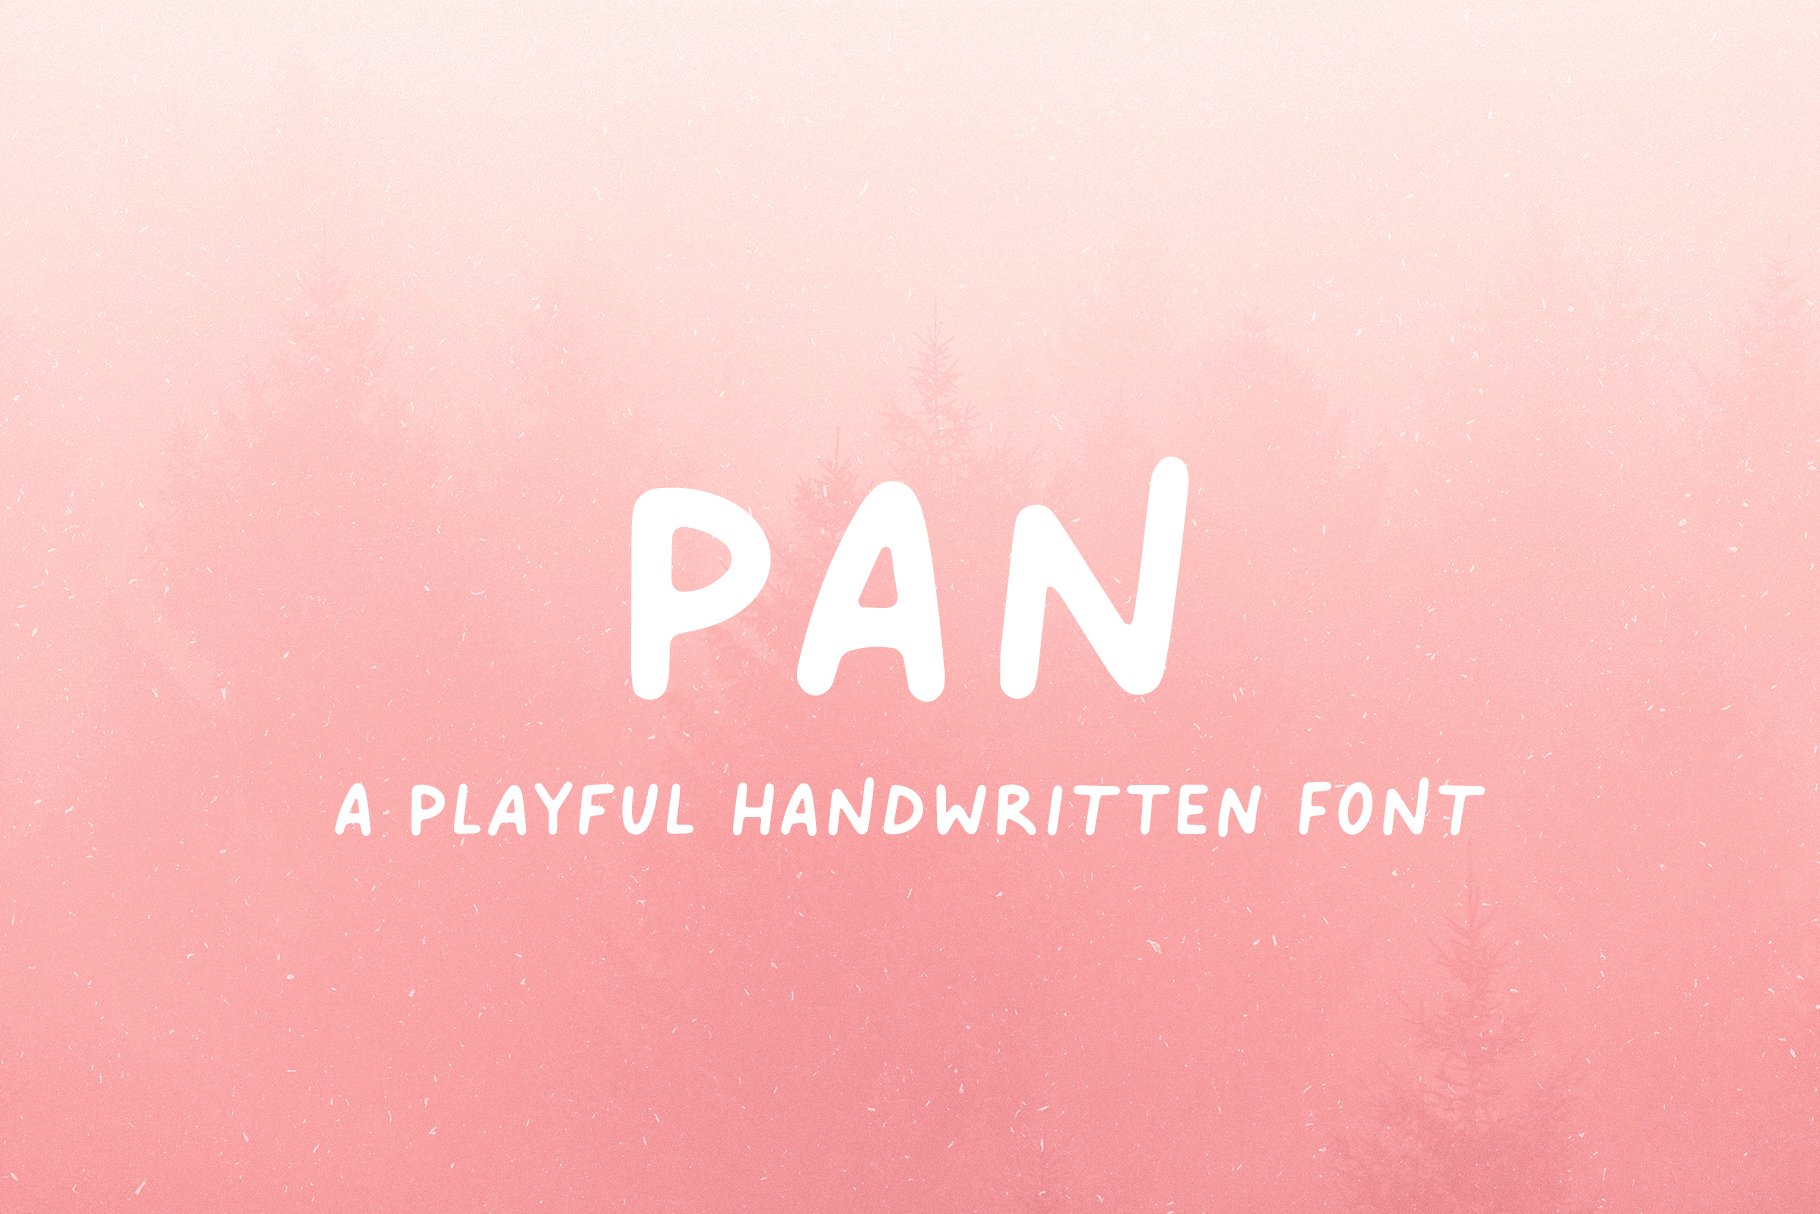 Pan // A Playful Handwritten Font cover image.